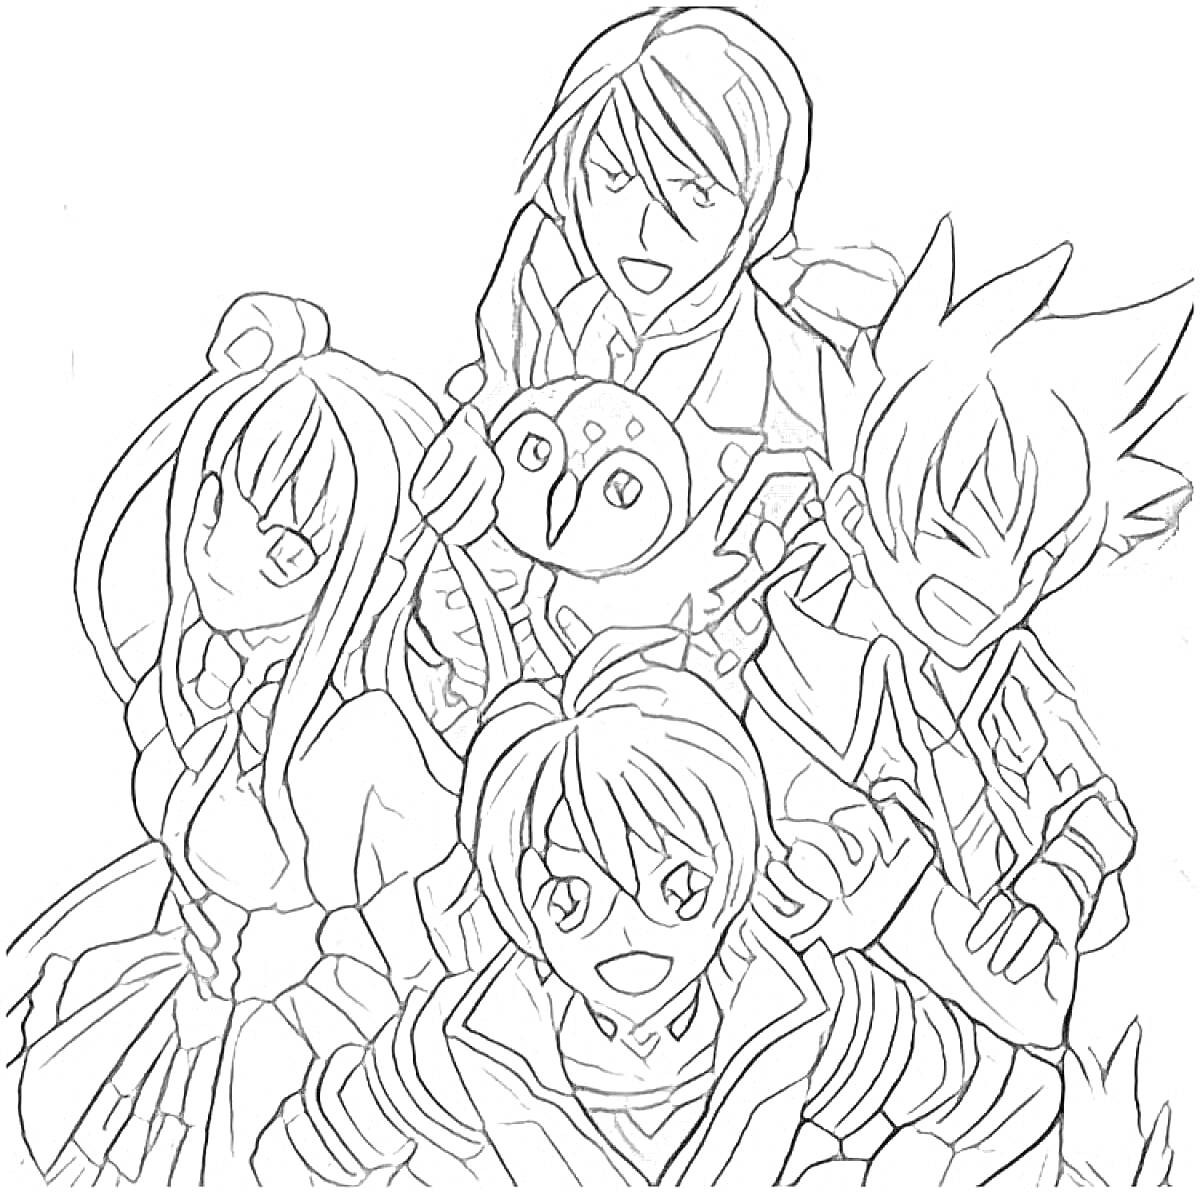 Четыре персонажа из аниме с совой среди них